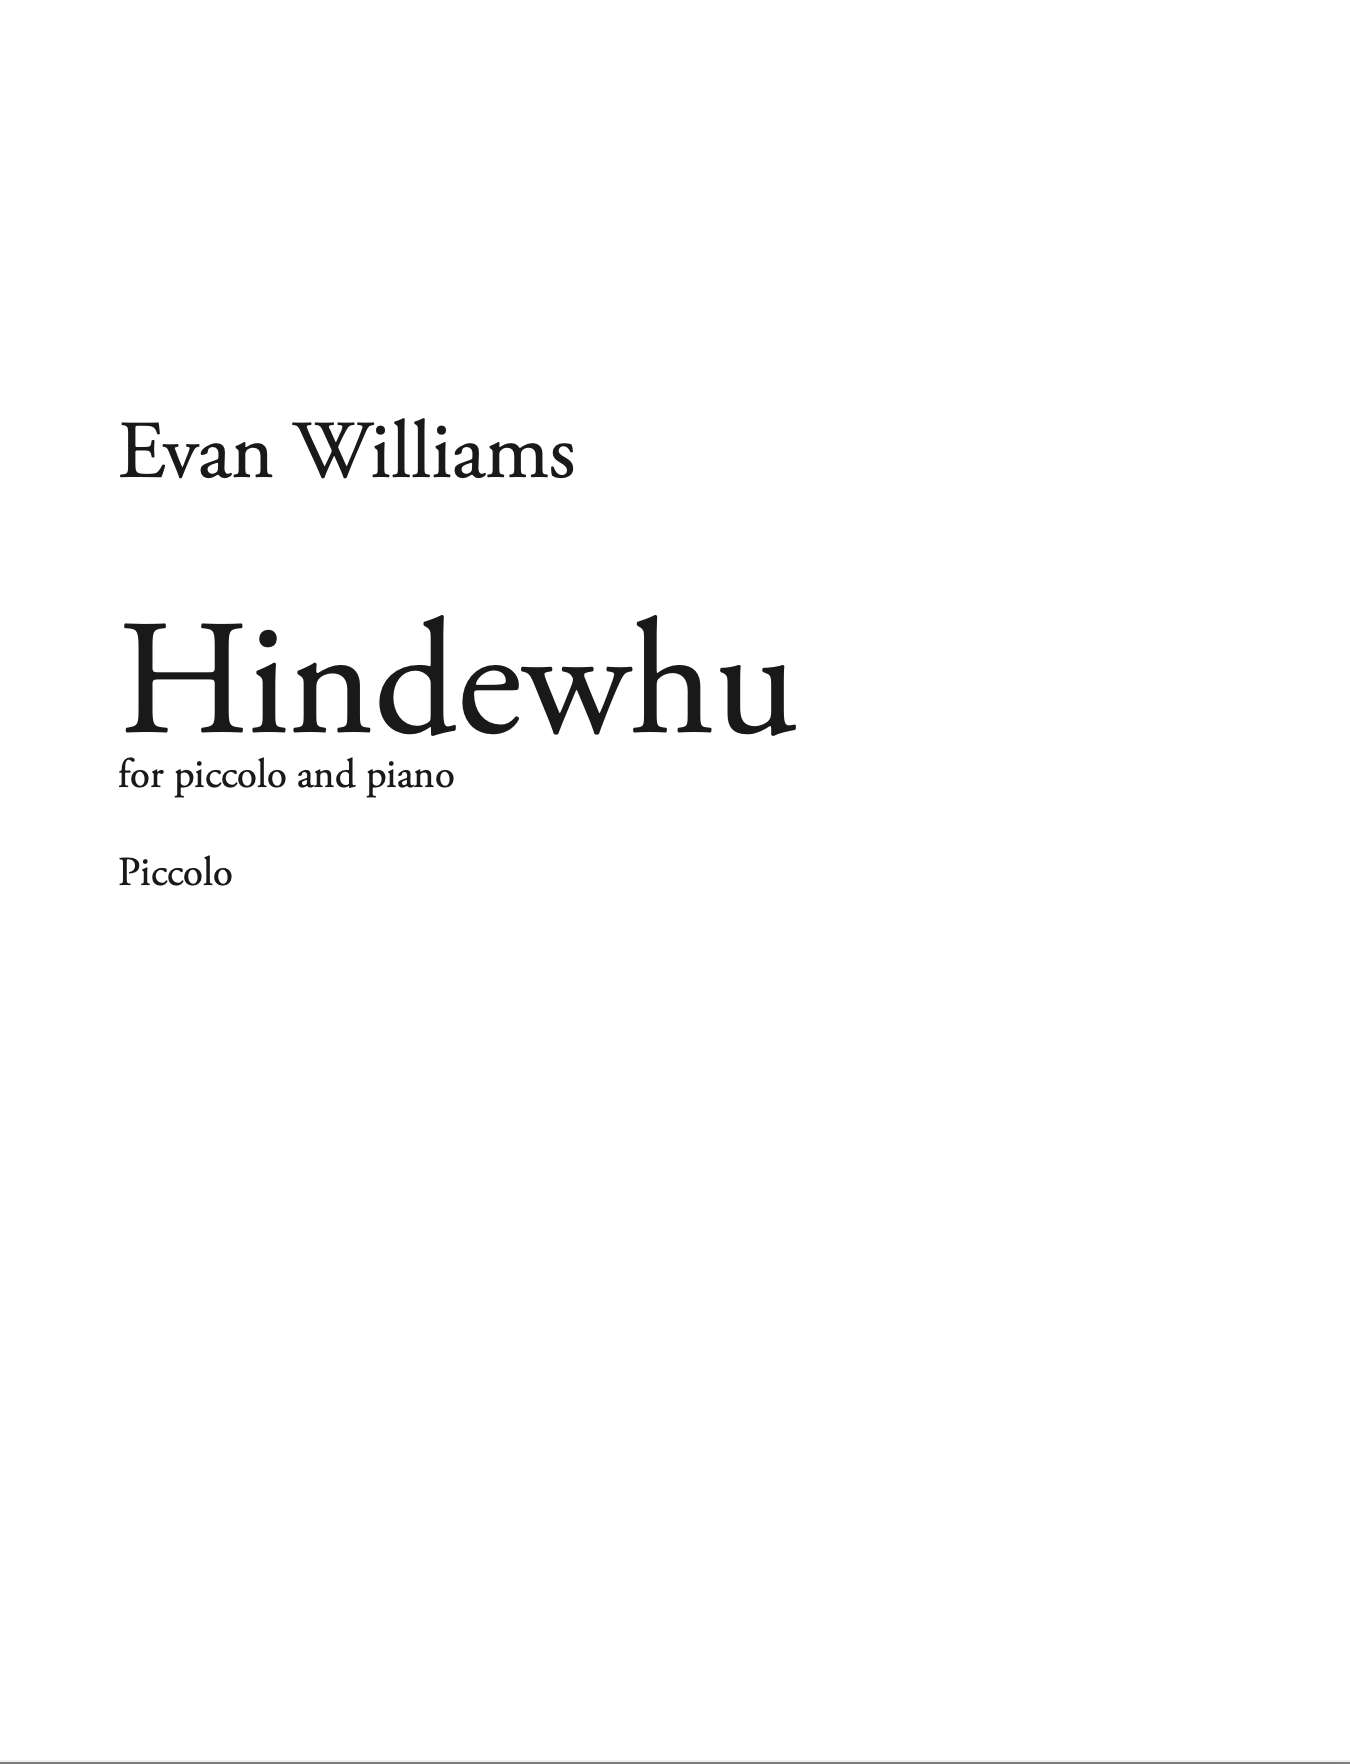 Hindewhu by Evan Williams